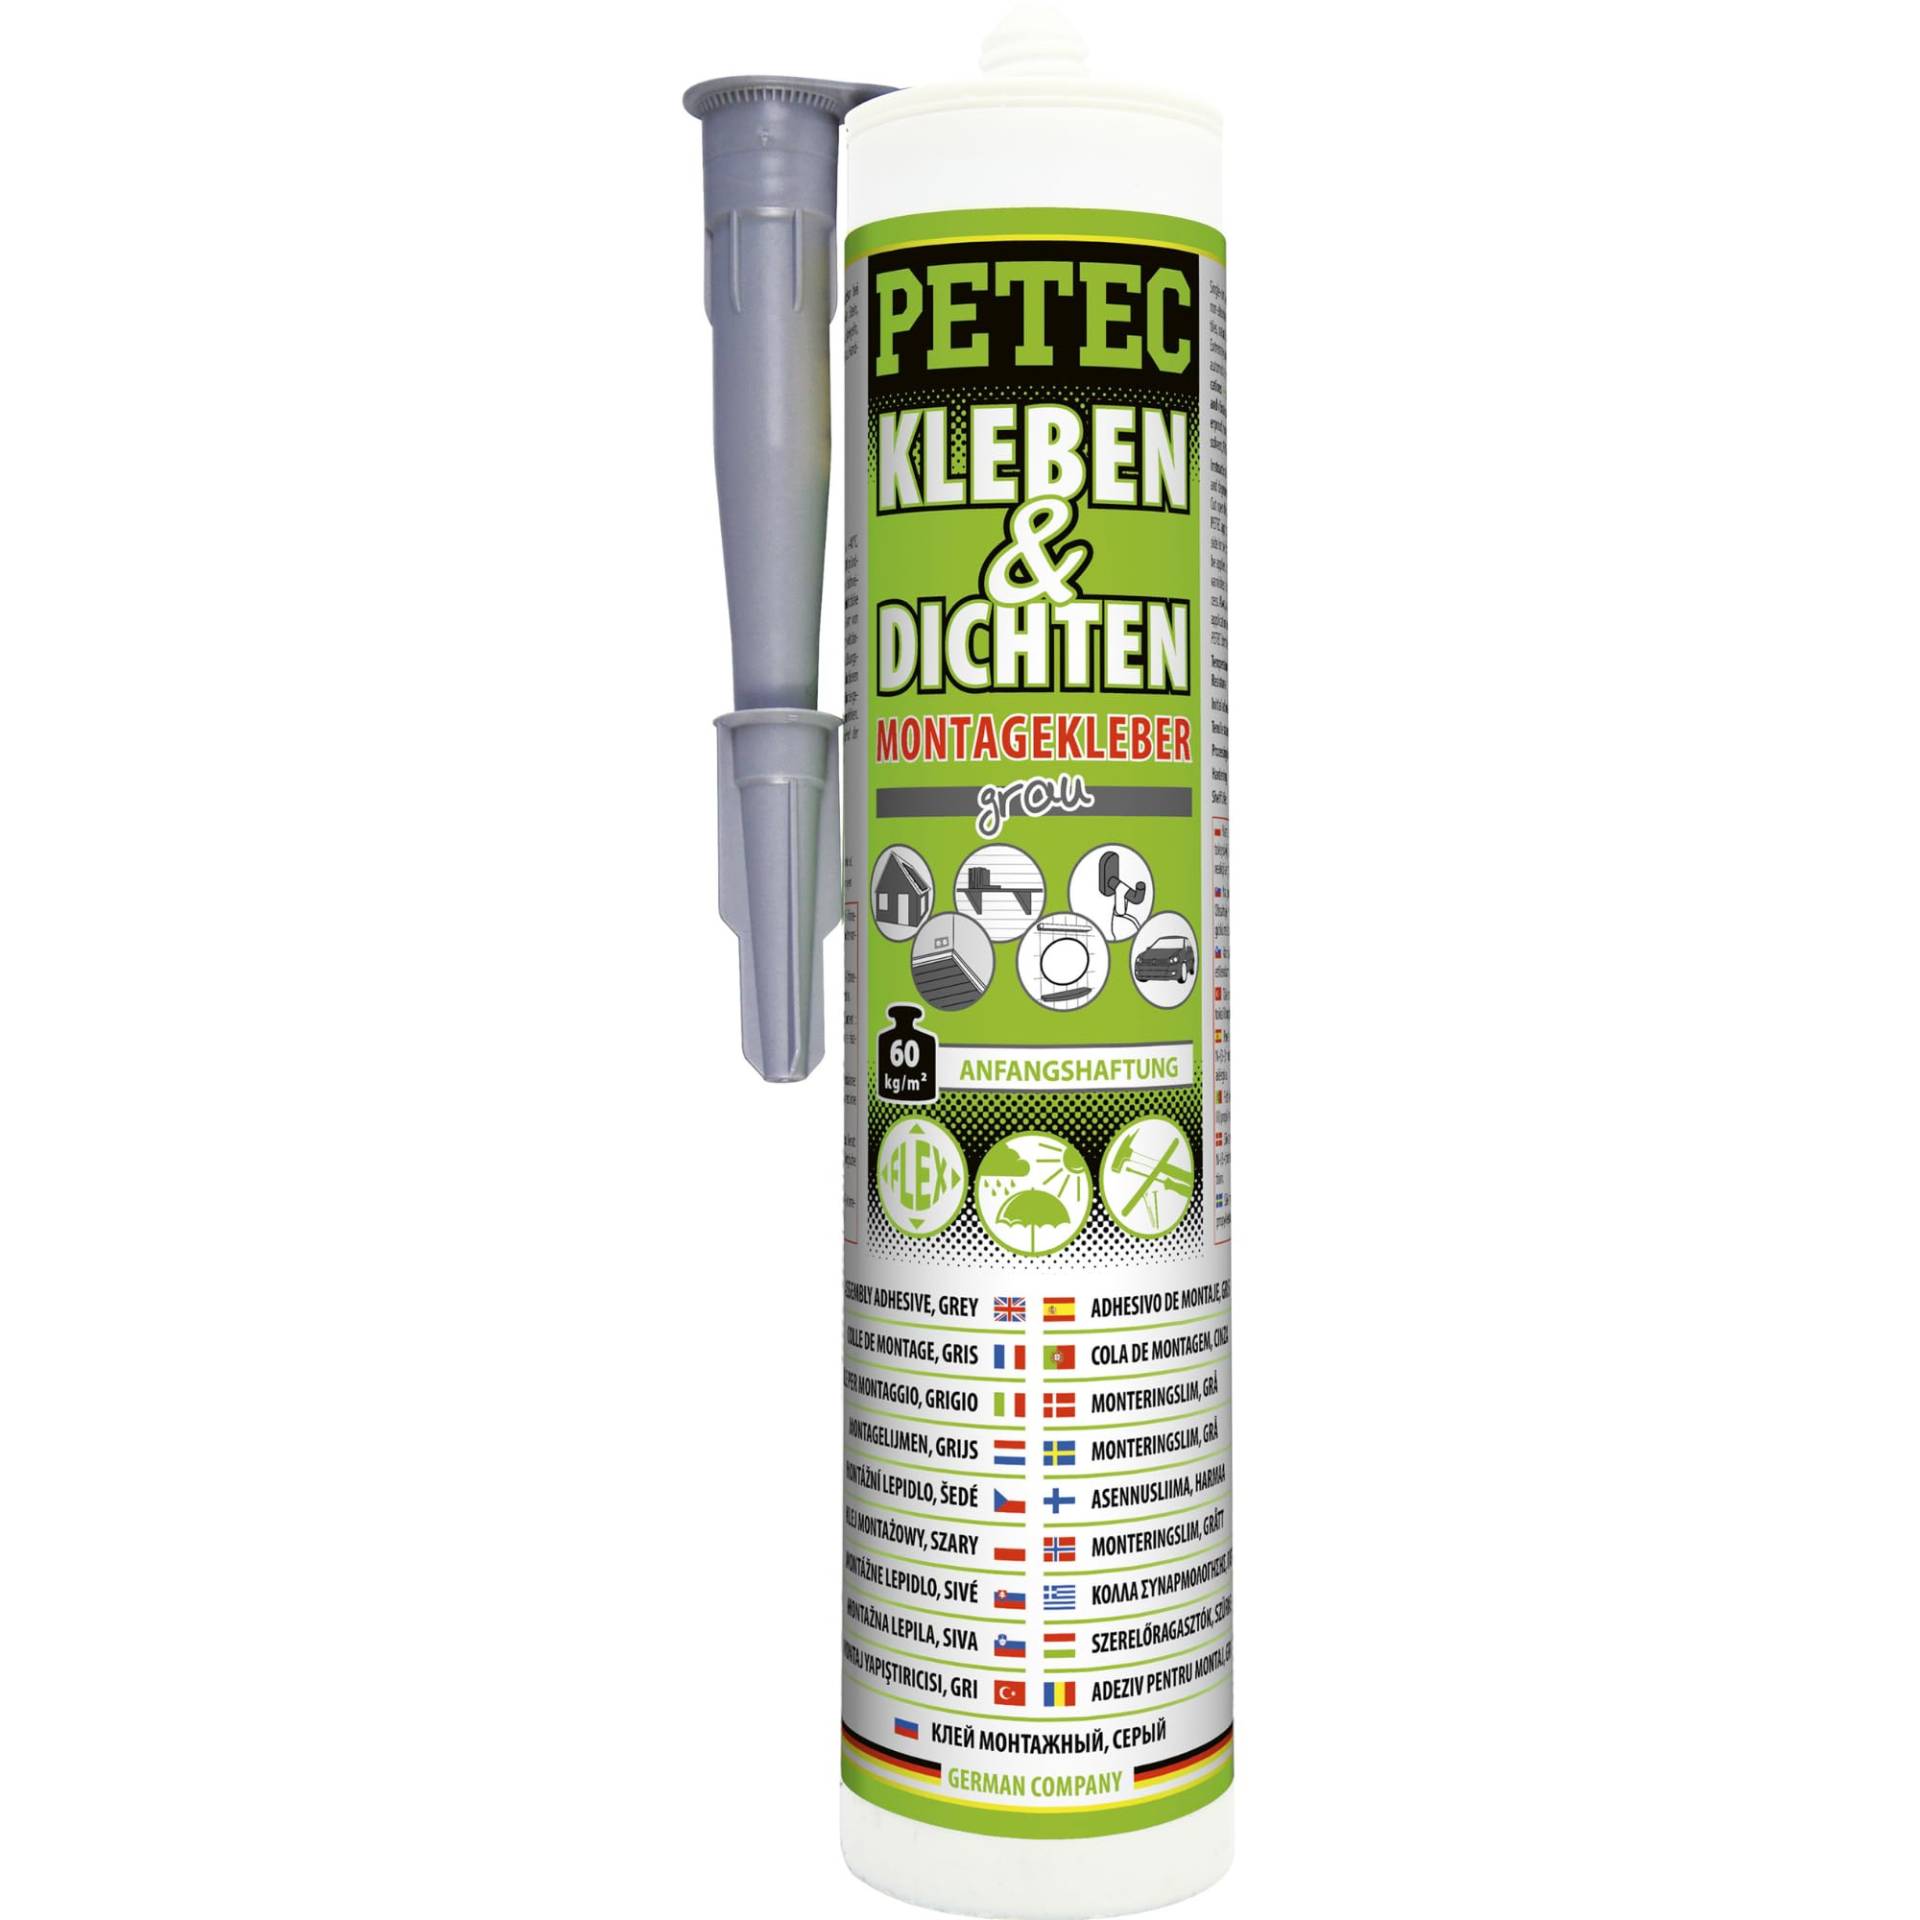 PETEC Kleber Montagekleber Außen & Innen grau Universalkleber extra stark Kleben & Dichten. Baukleber Dichtmasse für saugende und nichtsaugende Klebeflächen 94629 von PETEC